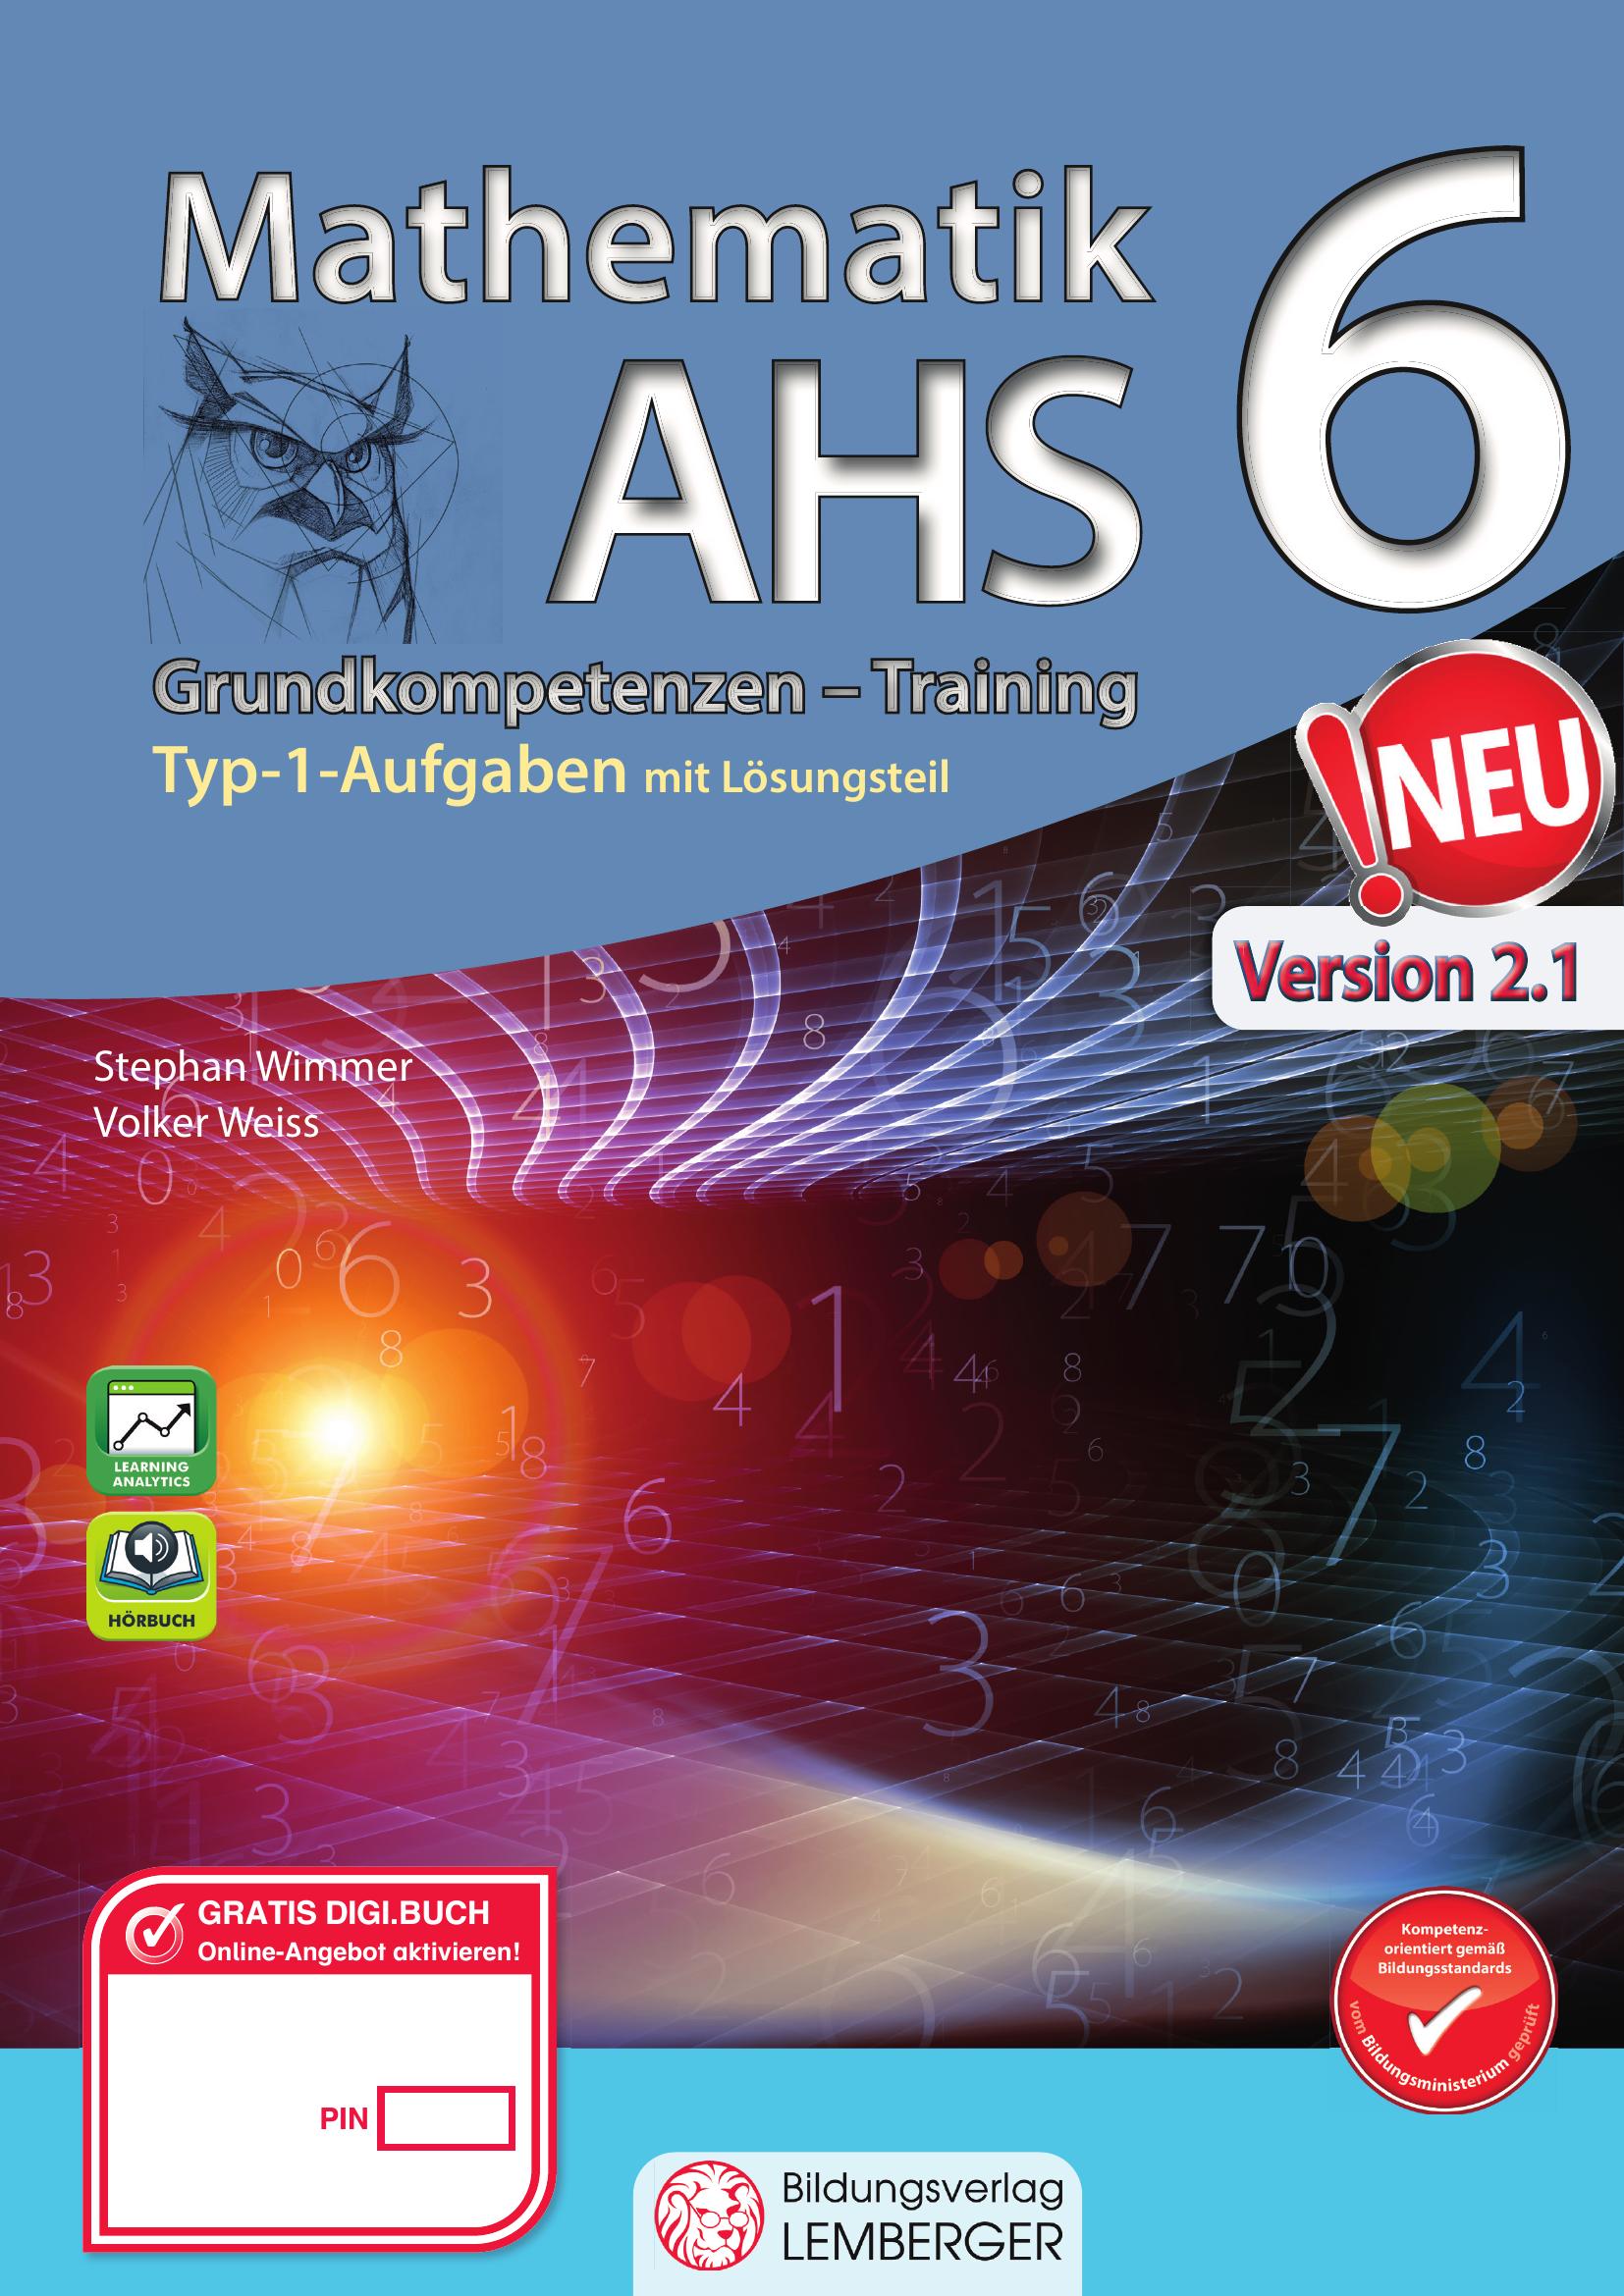 Mathematik AHS 6 – Grundkompetenzen Training v1.2 / mit Lösungsteil